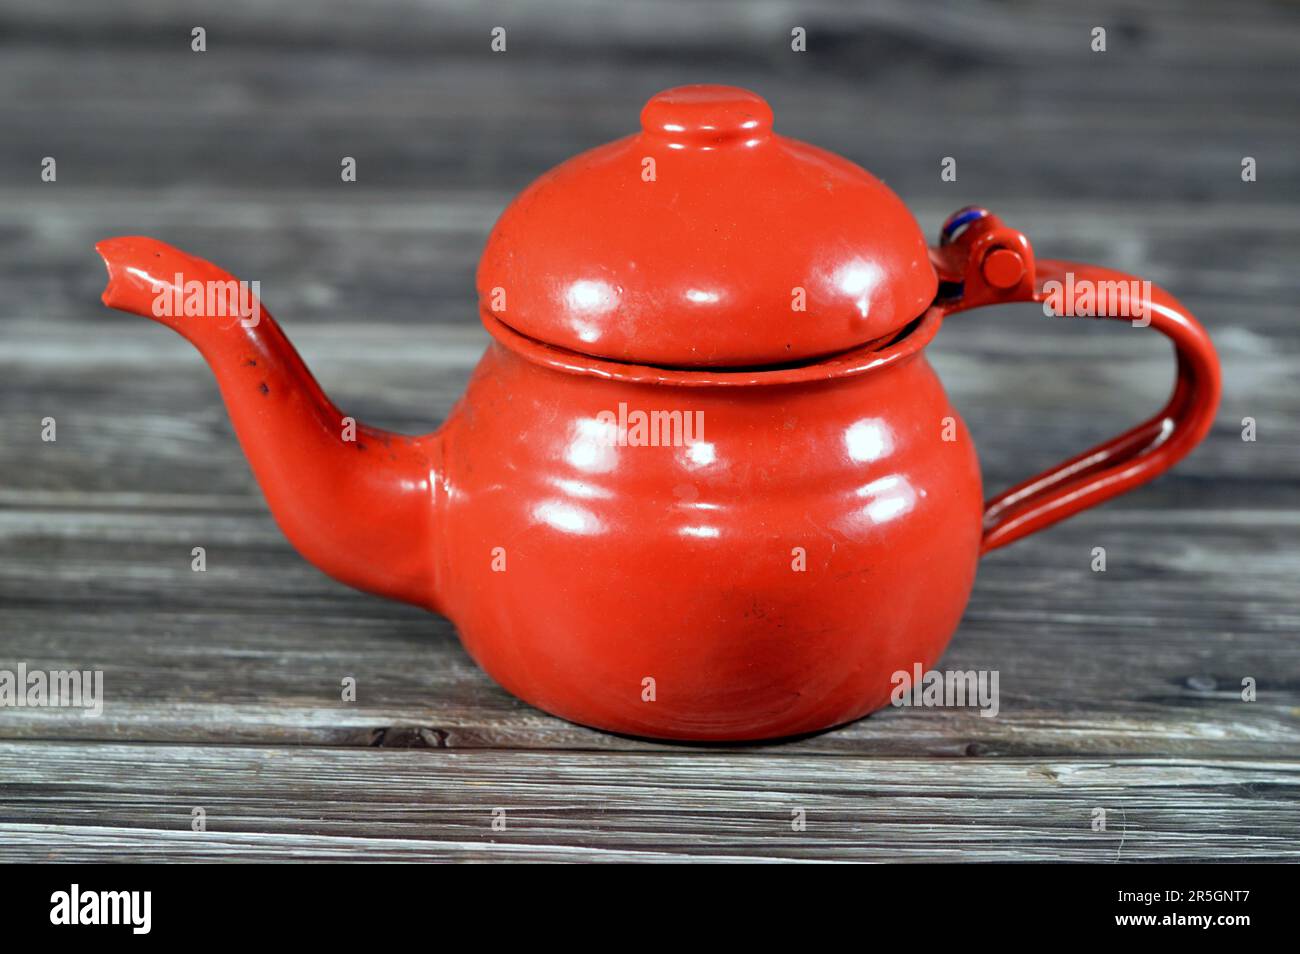 Théière rétro vintage de style ancien, théière rouge isolée sur fond en bois, contenant pour préparer et servir du thé avec une poignée et une ouverture en forme de forme Banque D'Images